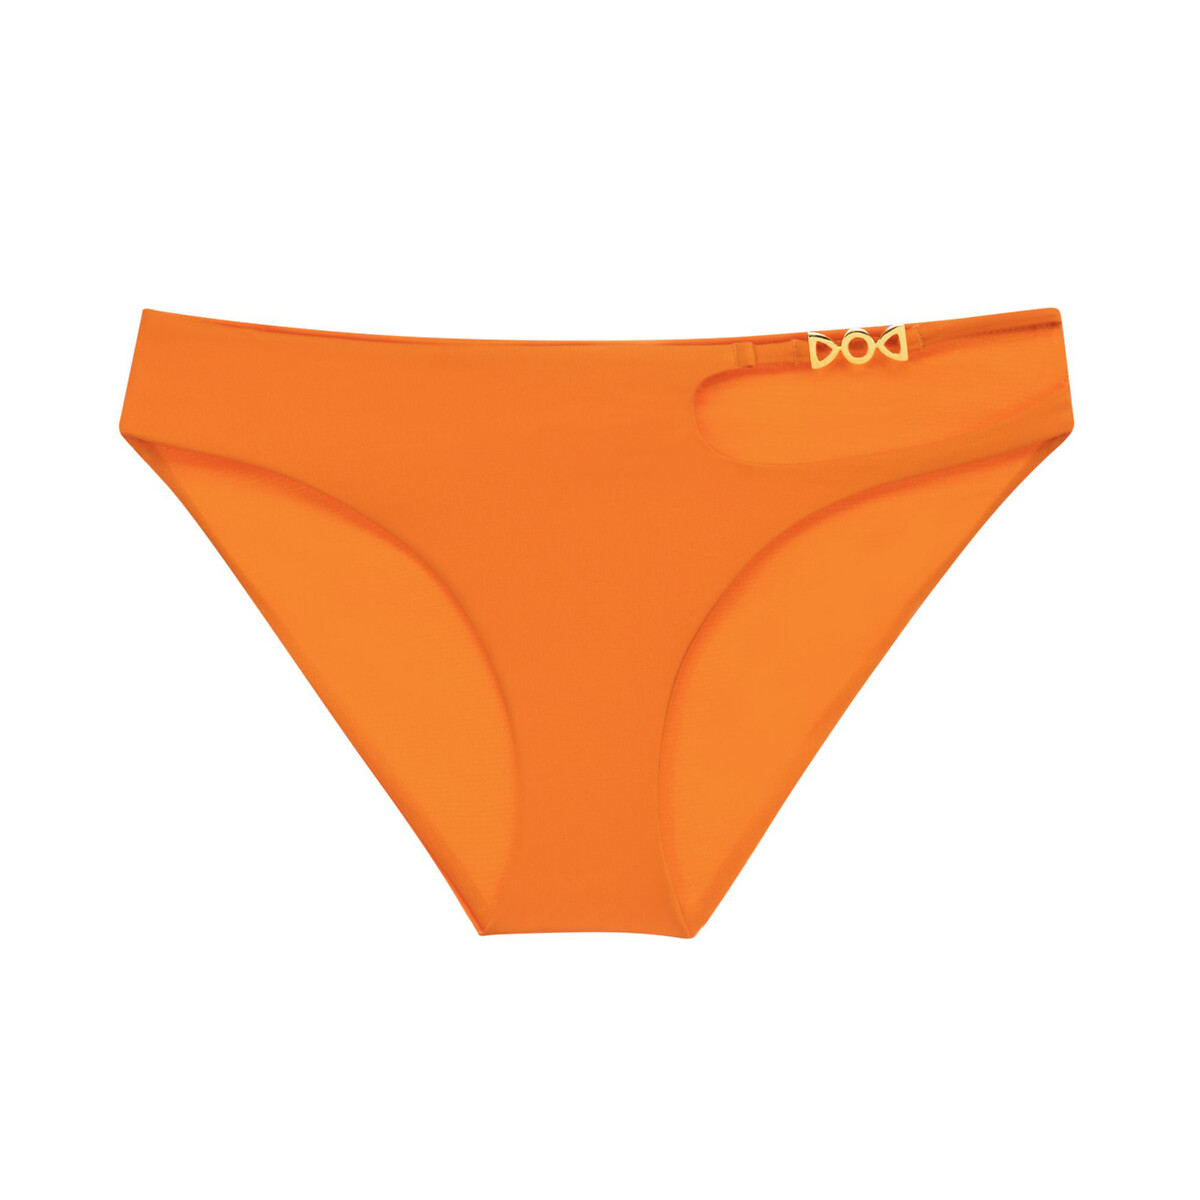 Низ от купальника Astarita XS оранжевый